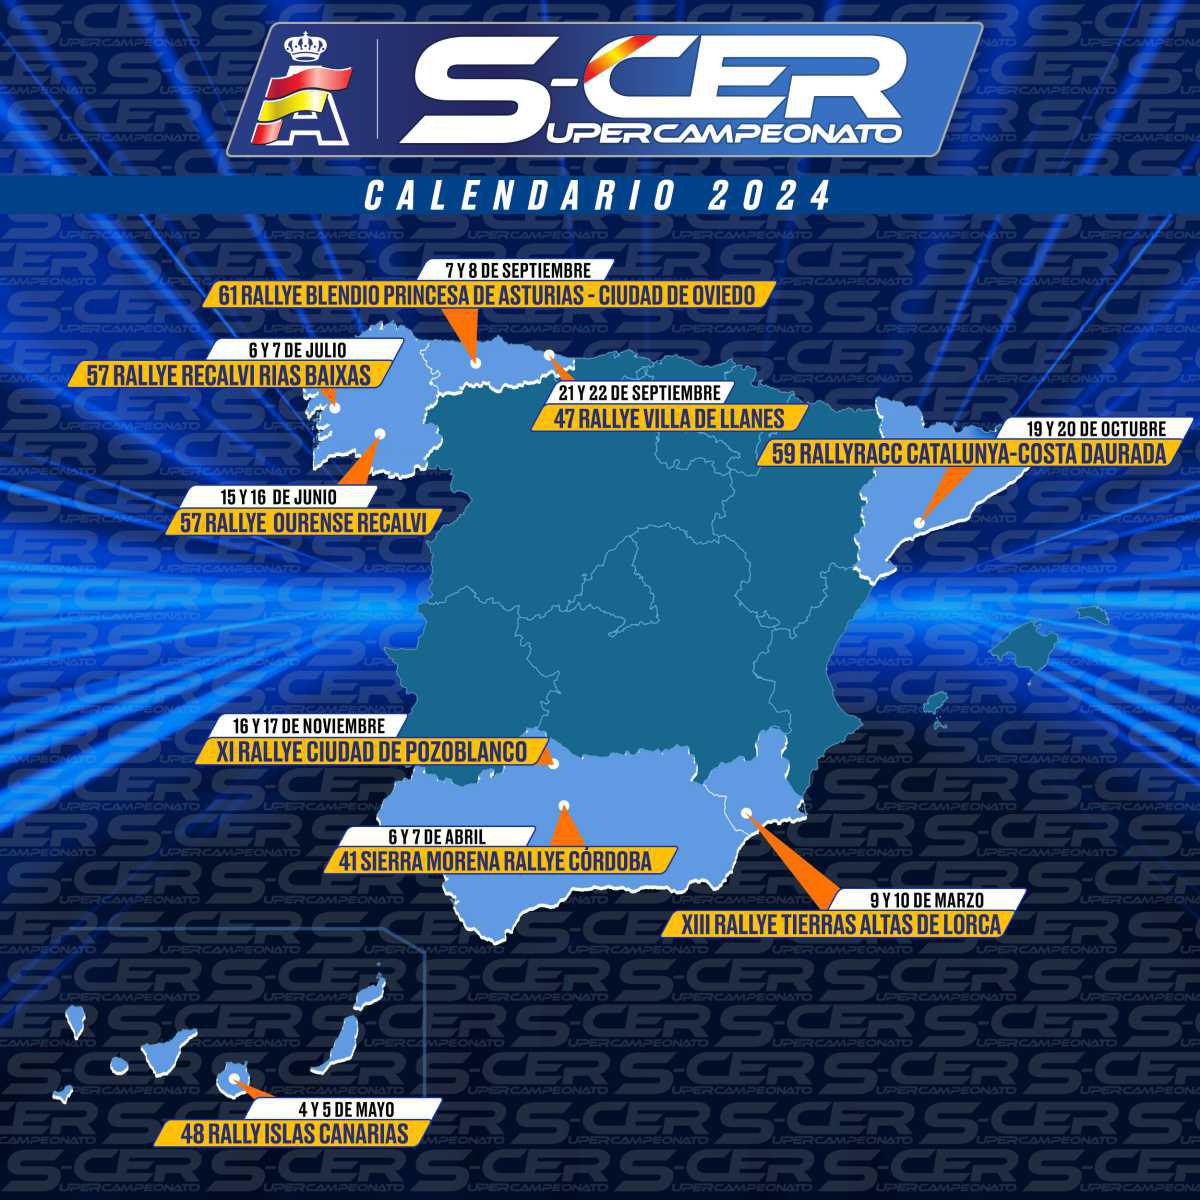 El Rallye Rías Baixas entra al S-CER en 2024